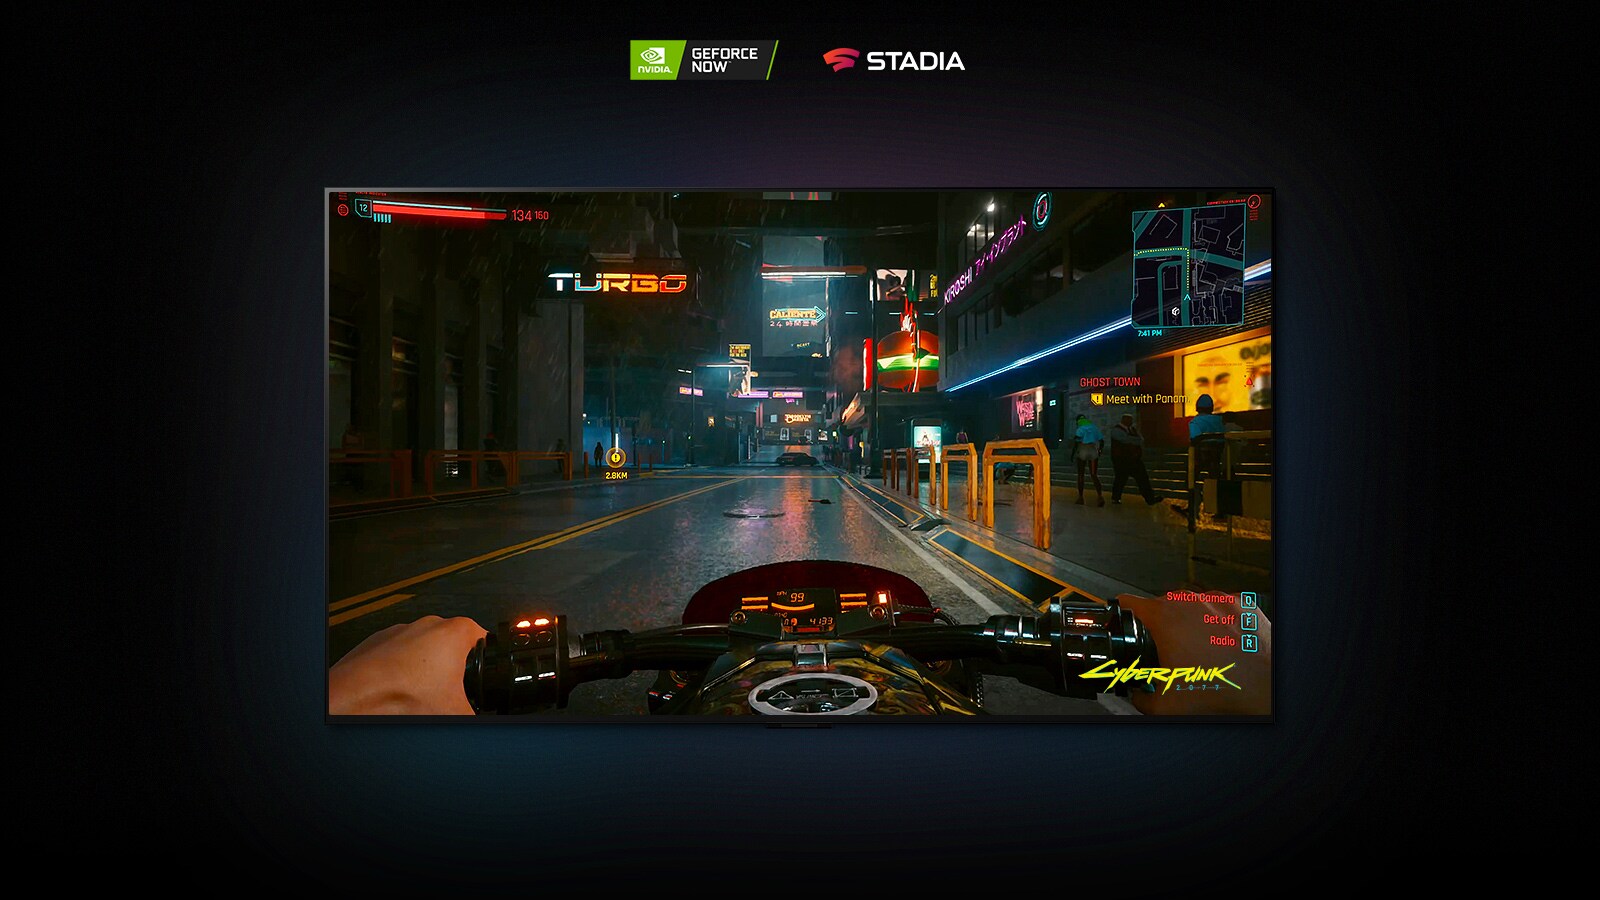 Zaslon LG OLED prikazuje prizor iz Cyberpunk 2077, v katerem se igralec vozi po ulici, osvetljeni z neonskimi lučmi.